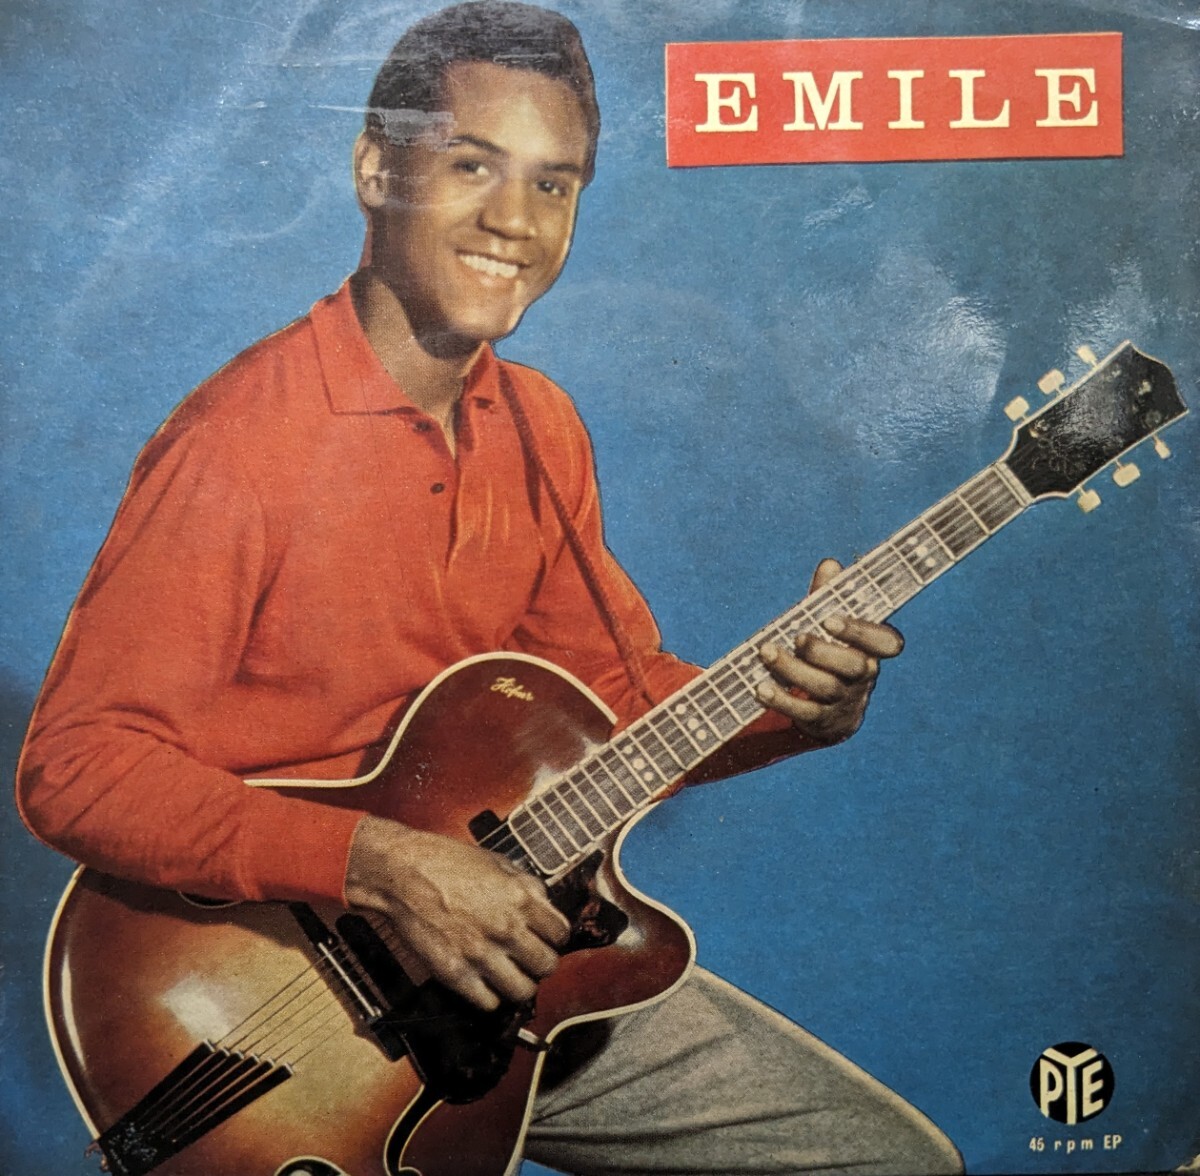 *EMILE FORD&CHECKMATES/EMILE1960\'UK PYE EPS